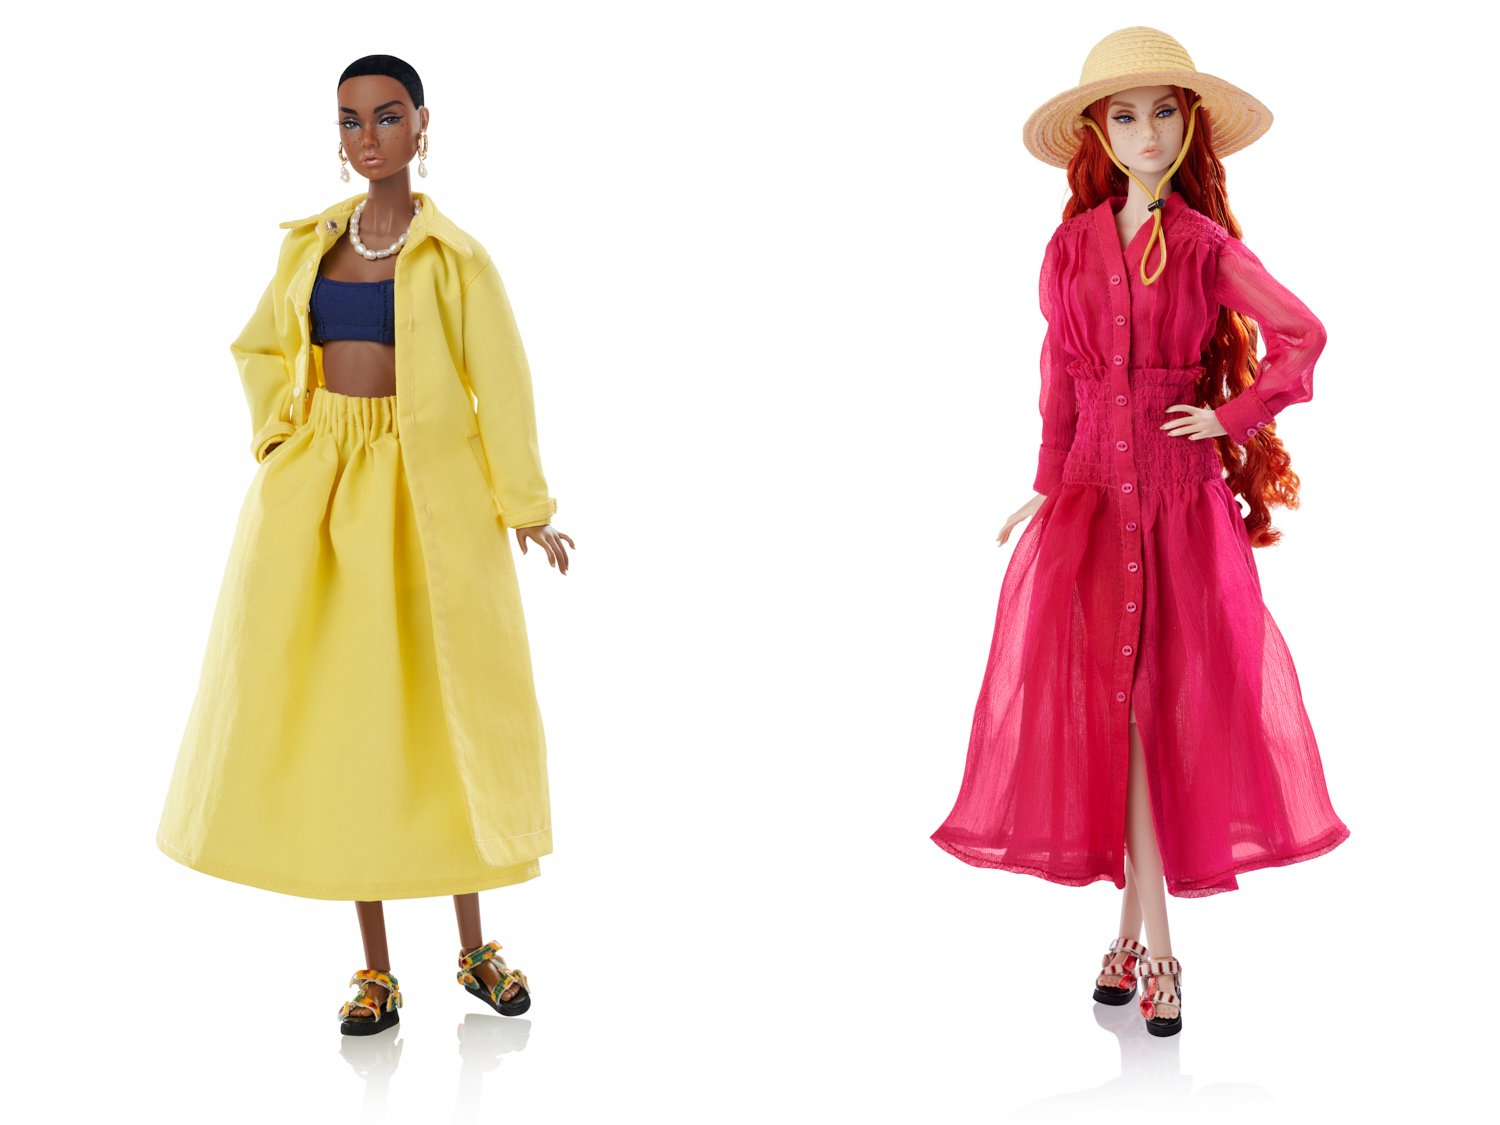 Jason Wu Poppy Parker Spring 2021 pair of dolls — Fashion Doll